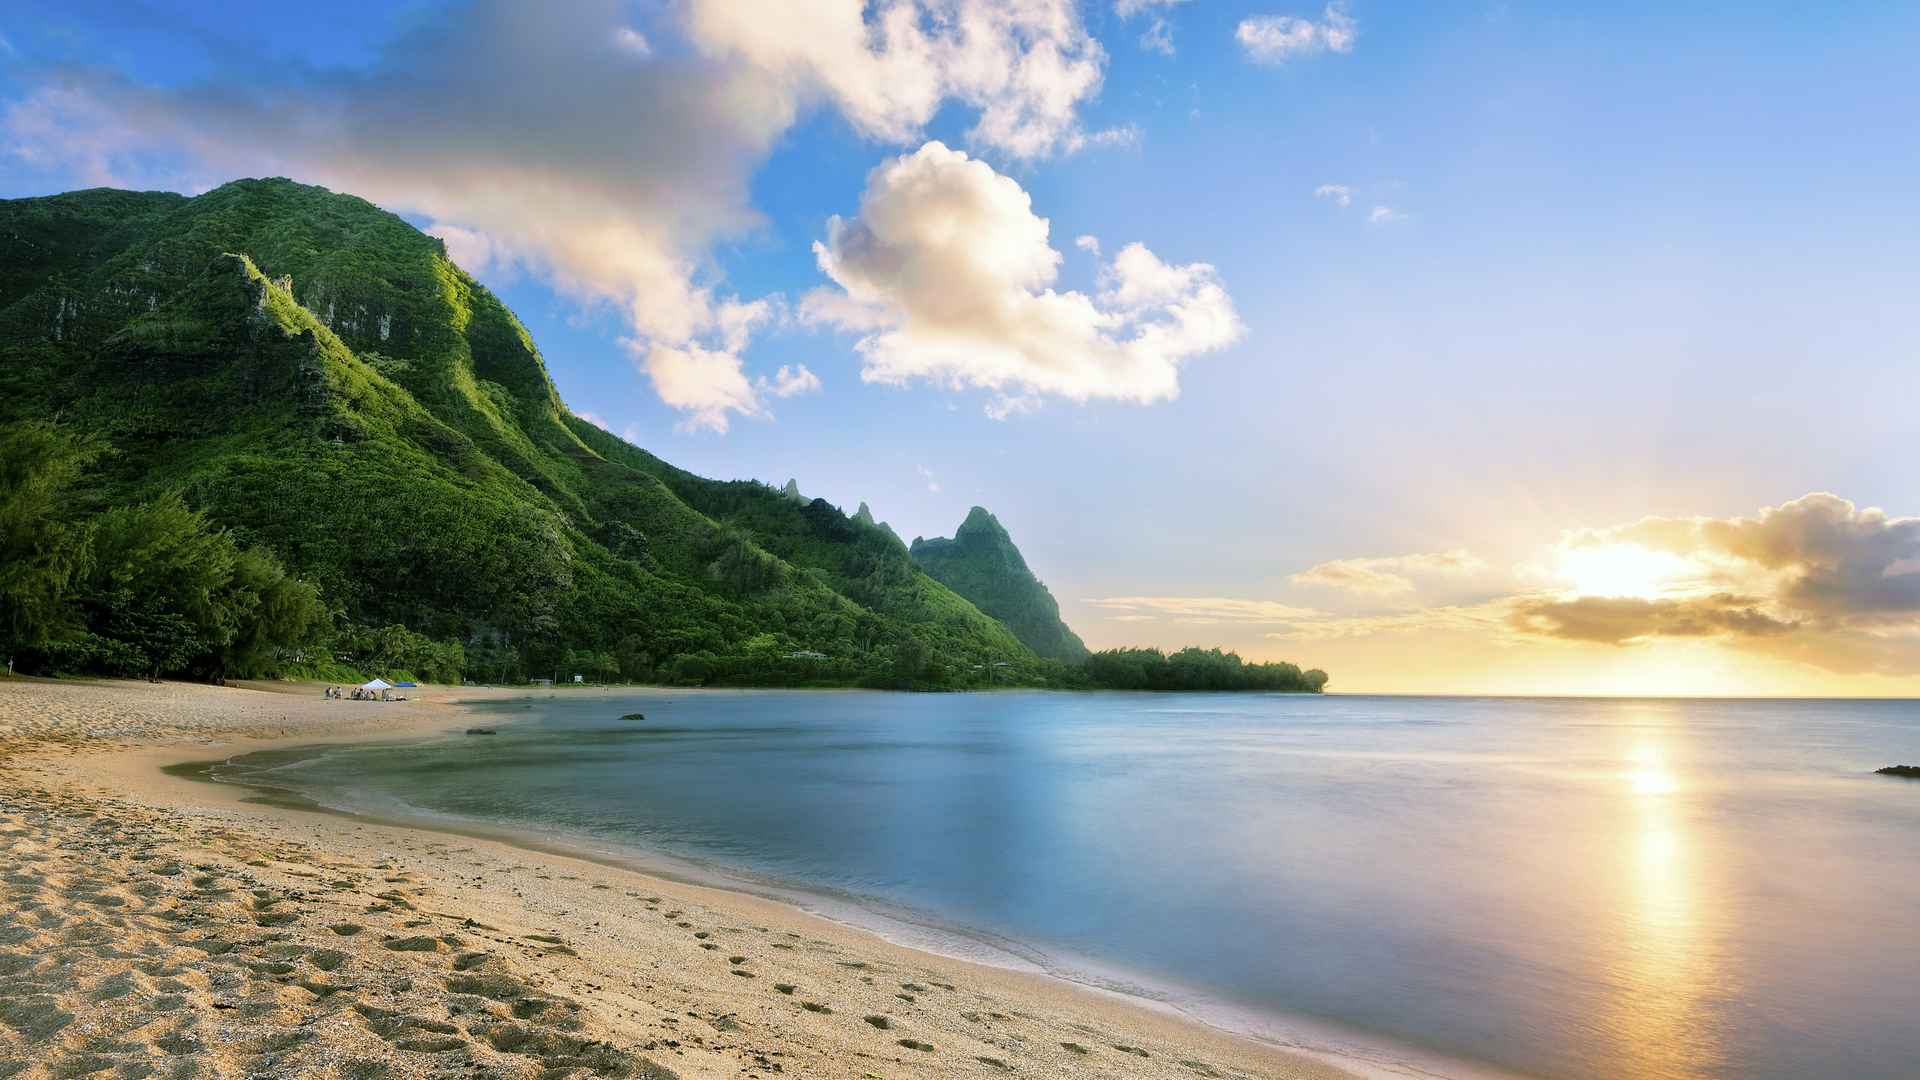 夏威夷岛-自然风景壁纸预览 | 10wallpaper.com